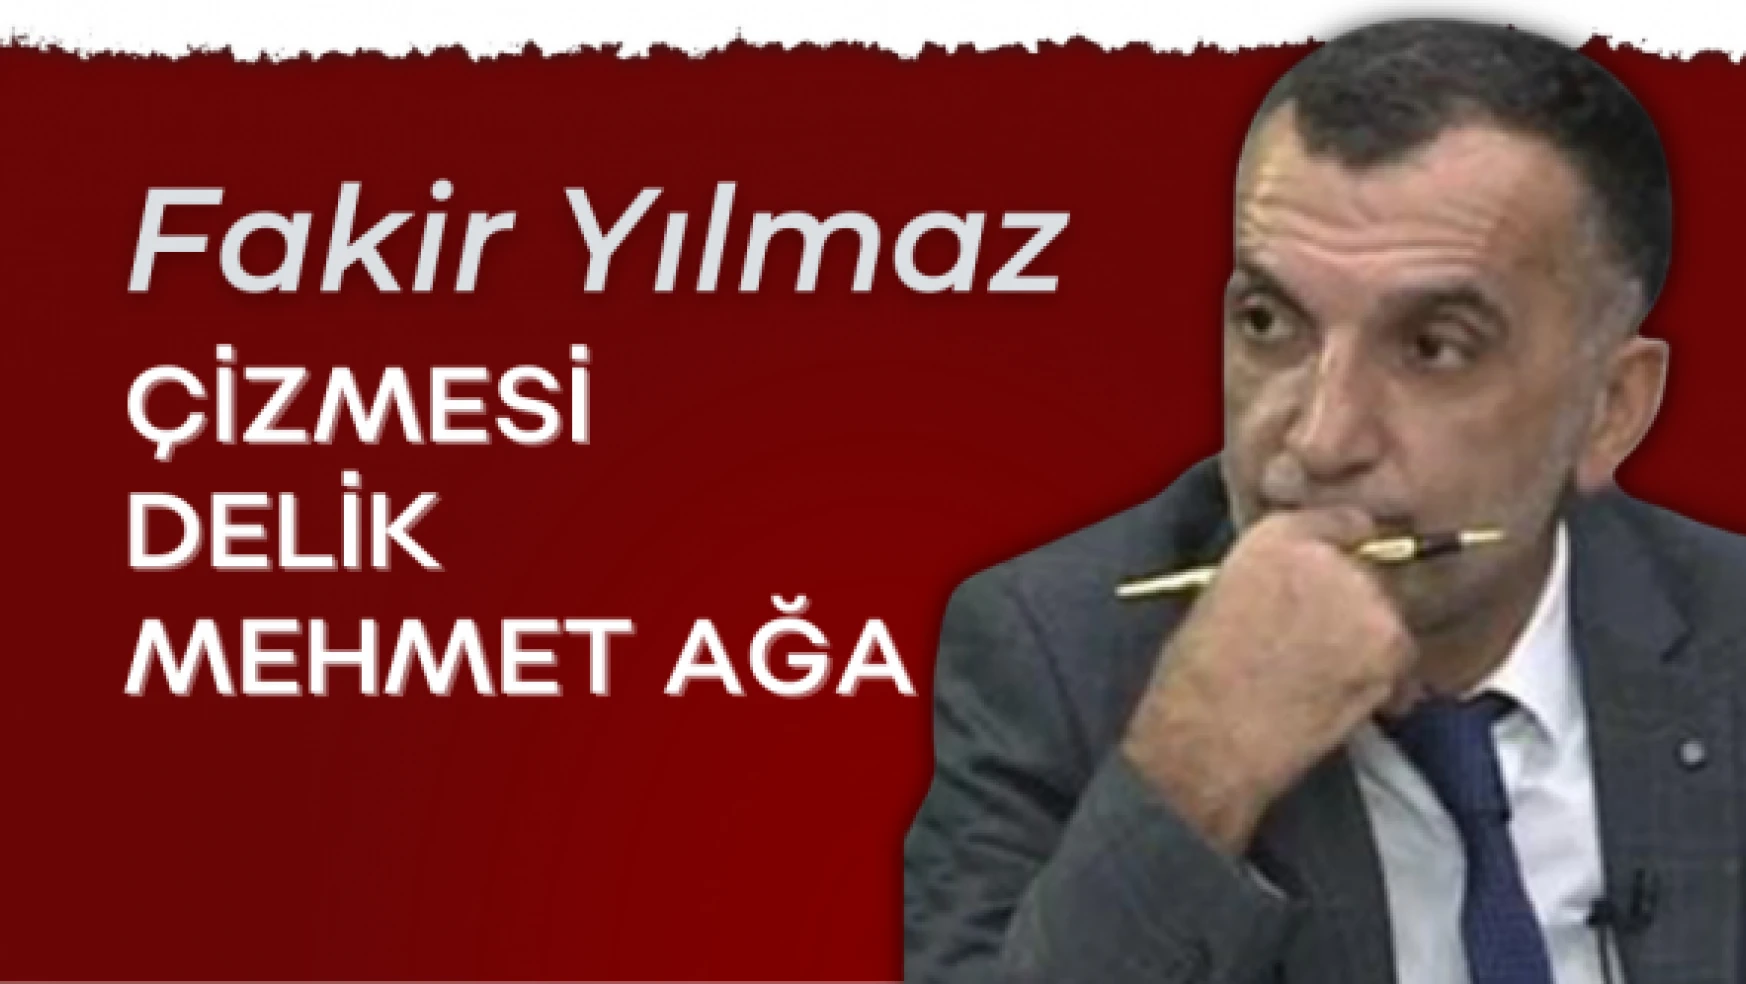 Gazeteci Fakir Yılmaz yazdı... "Çizmesi delik Mehmet Ağa"